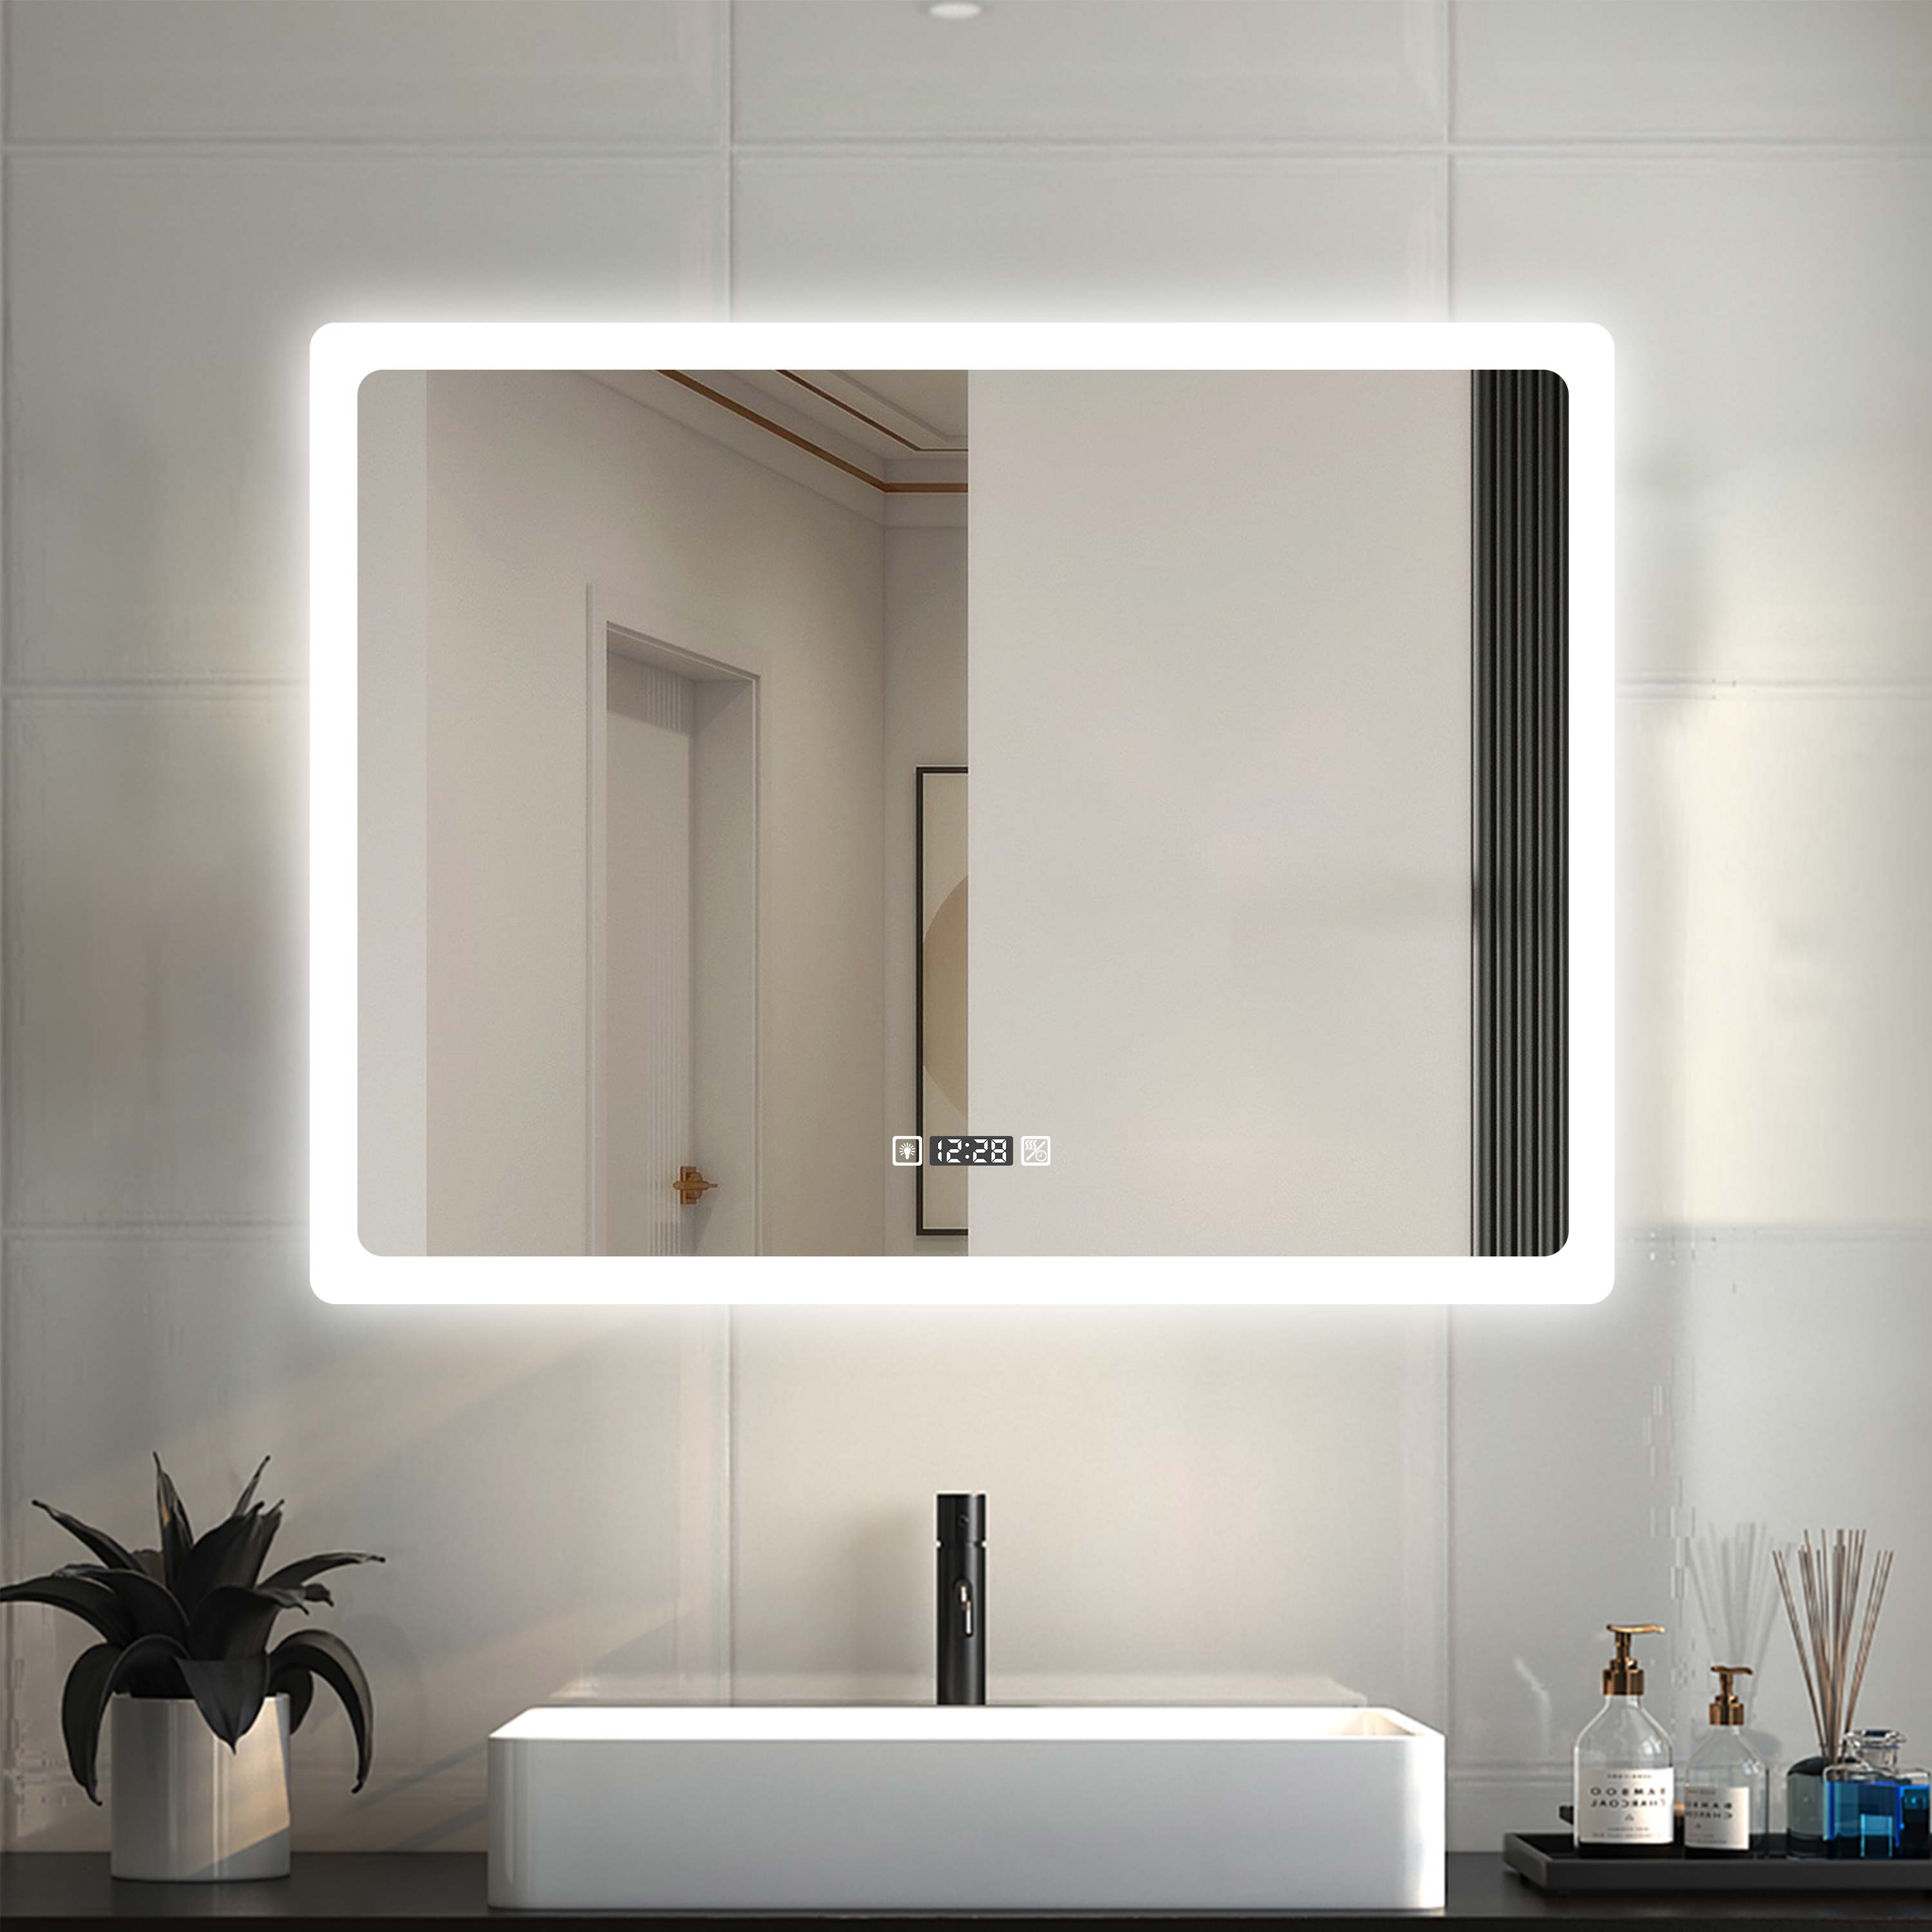 LED beleuchtet Badspiegel Wandspiegel Badezimmerspiegel Uhr Touchschalter 60cm 